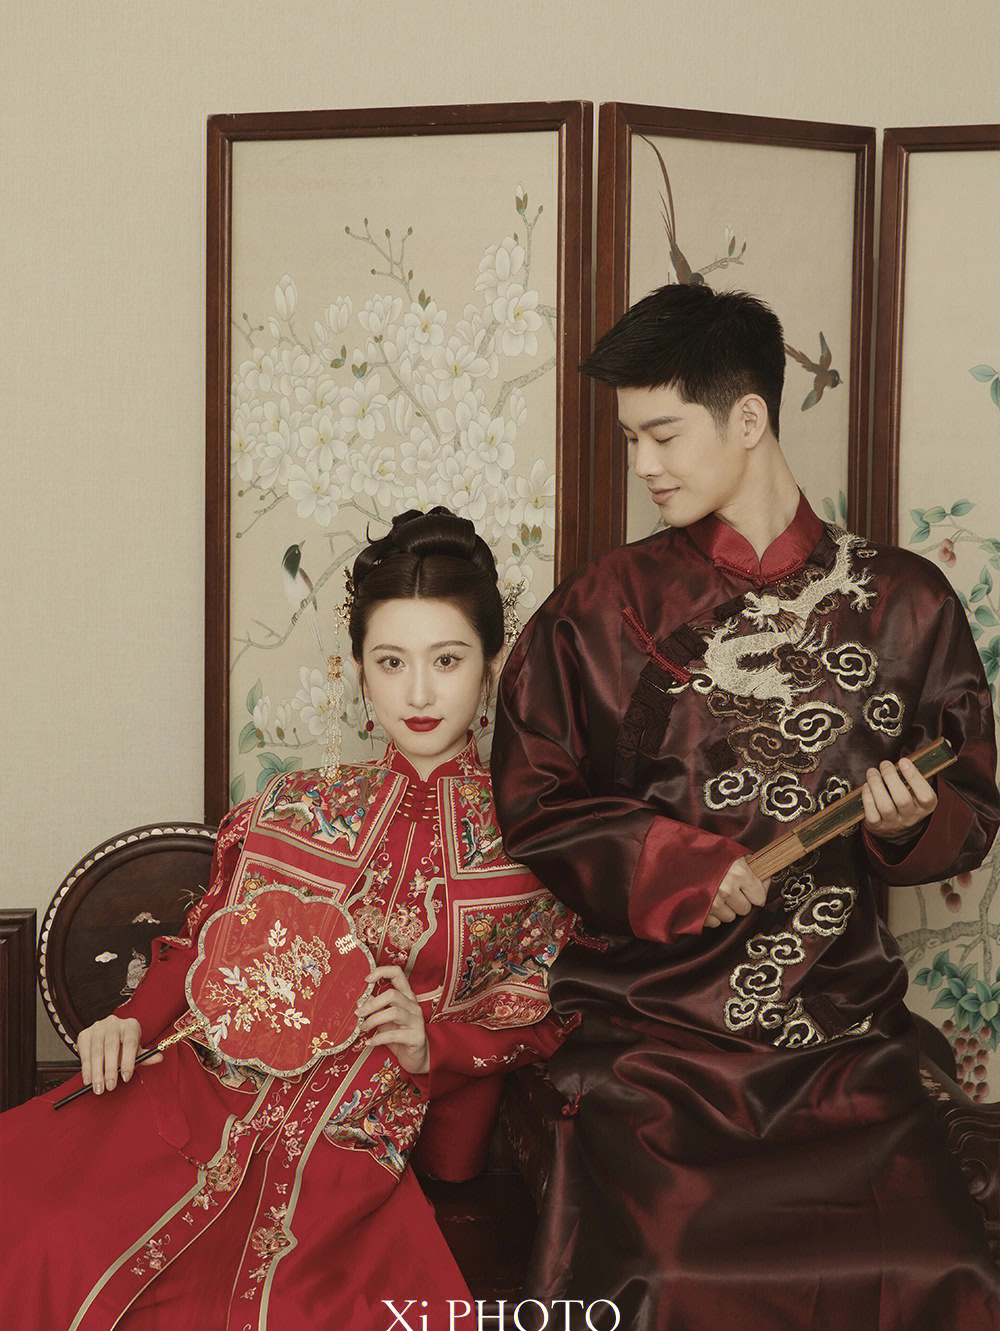 中国风藏在工笔画婚纱照里的诗情画意